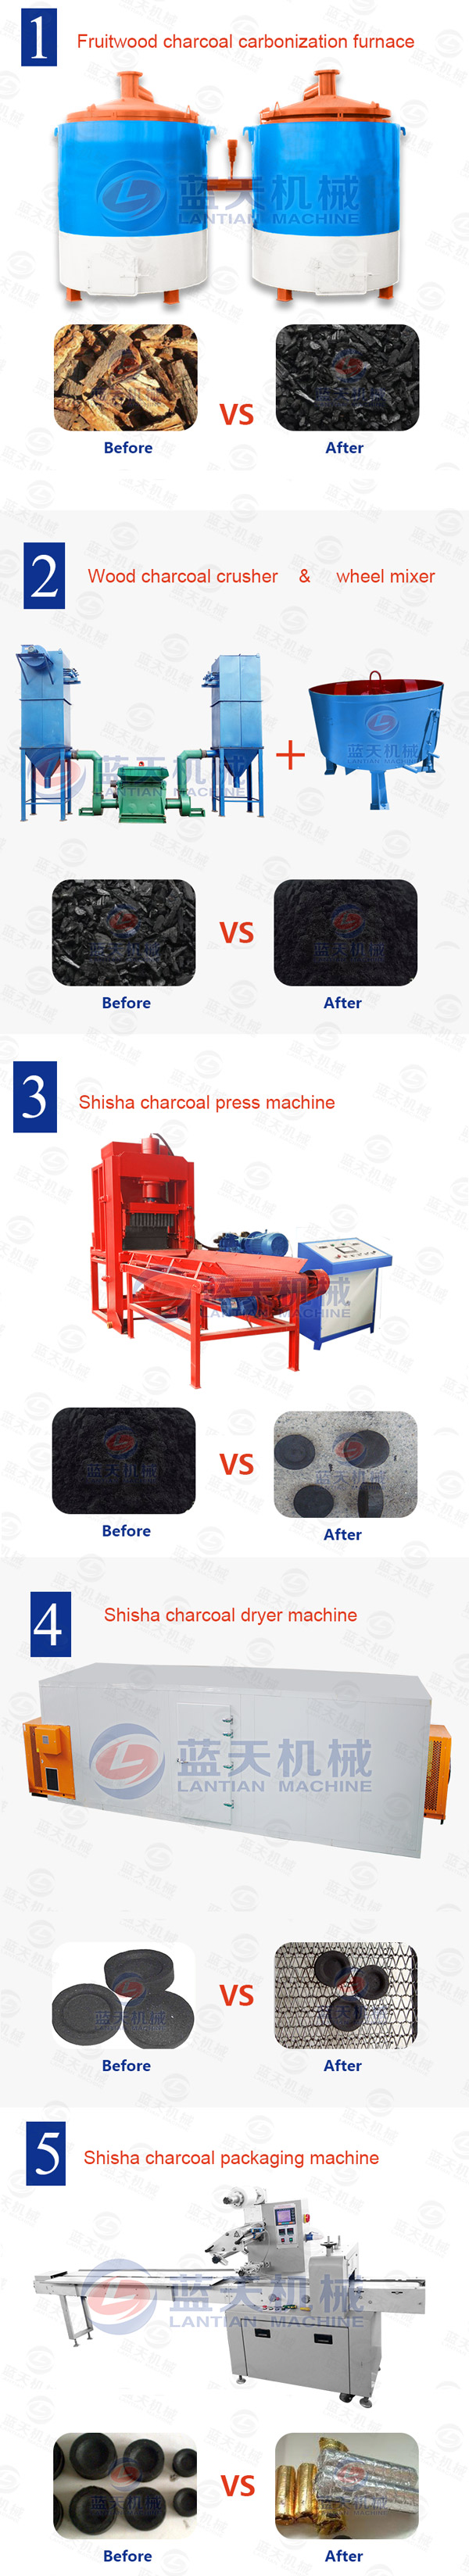 Shisha Charcoal Press Machine